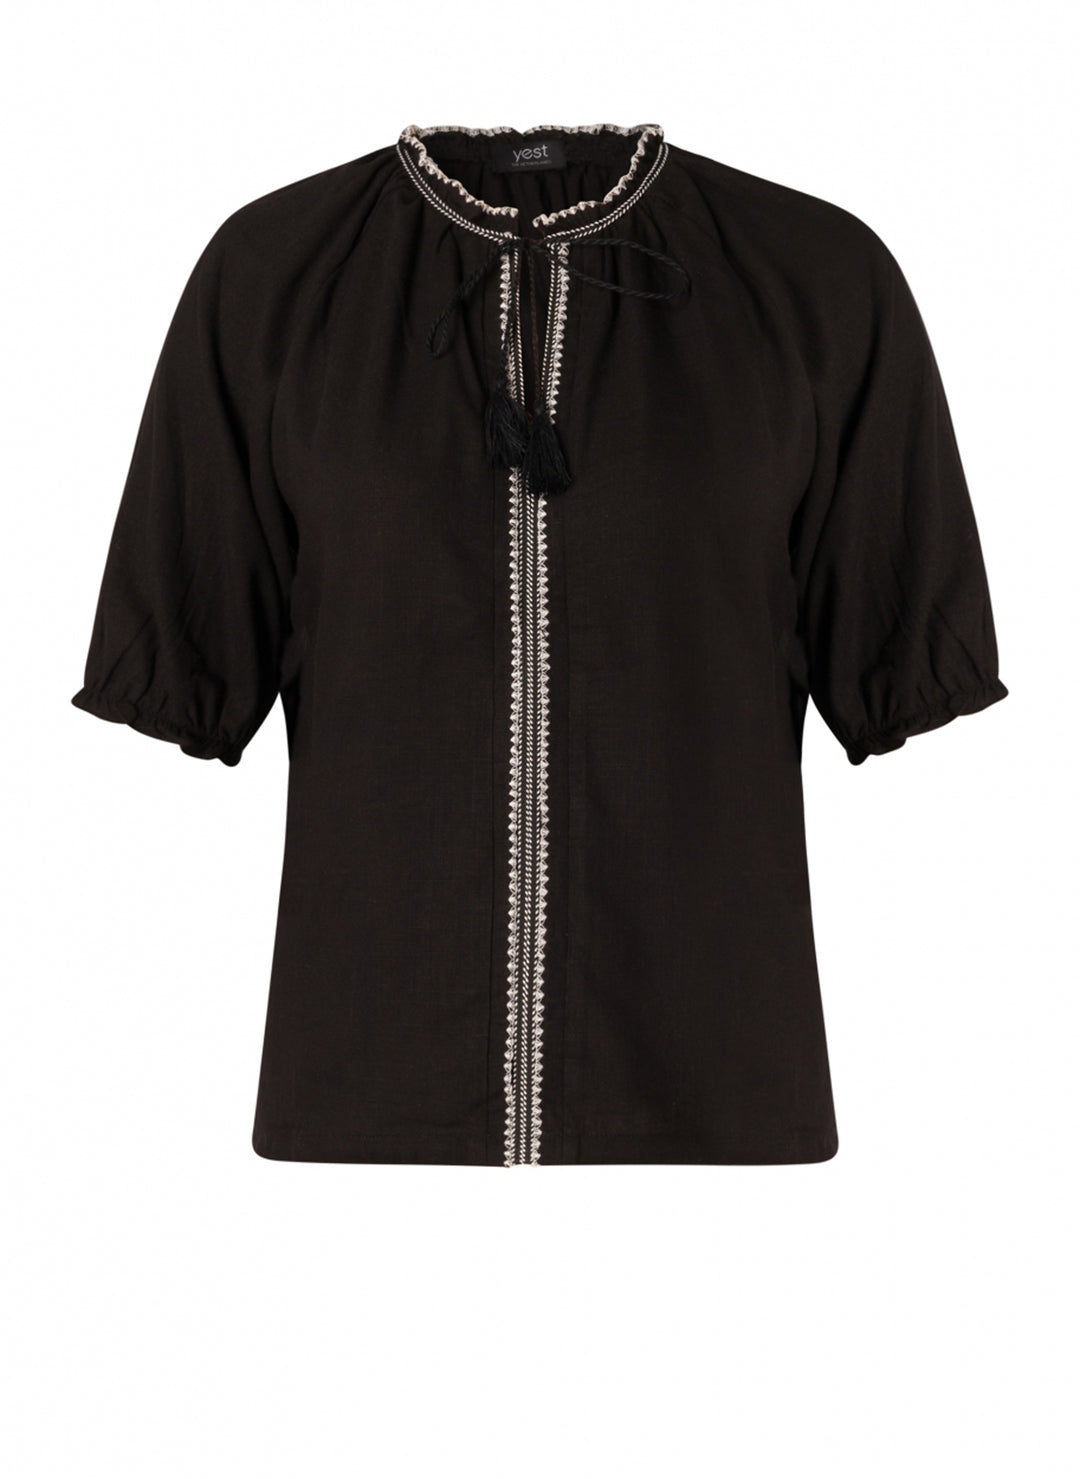 zwarte blouse met witte bies - yesta - - grote maten - dameskleding - kledingwinkel - herent - leuven